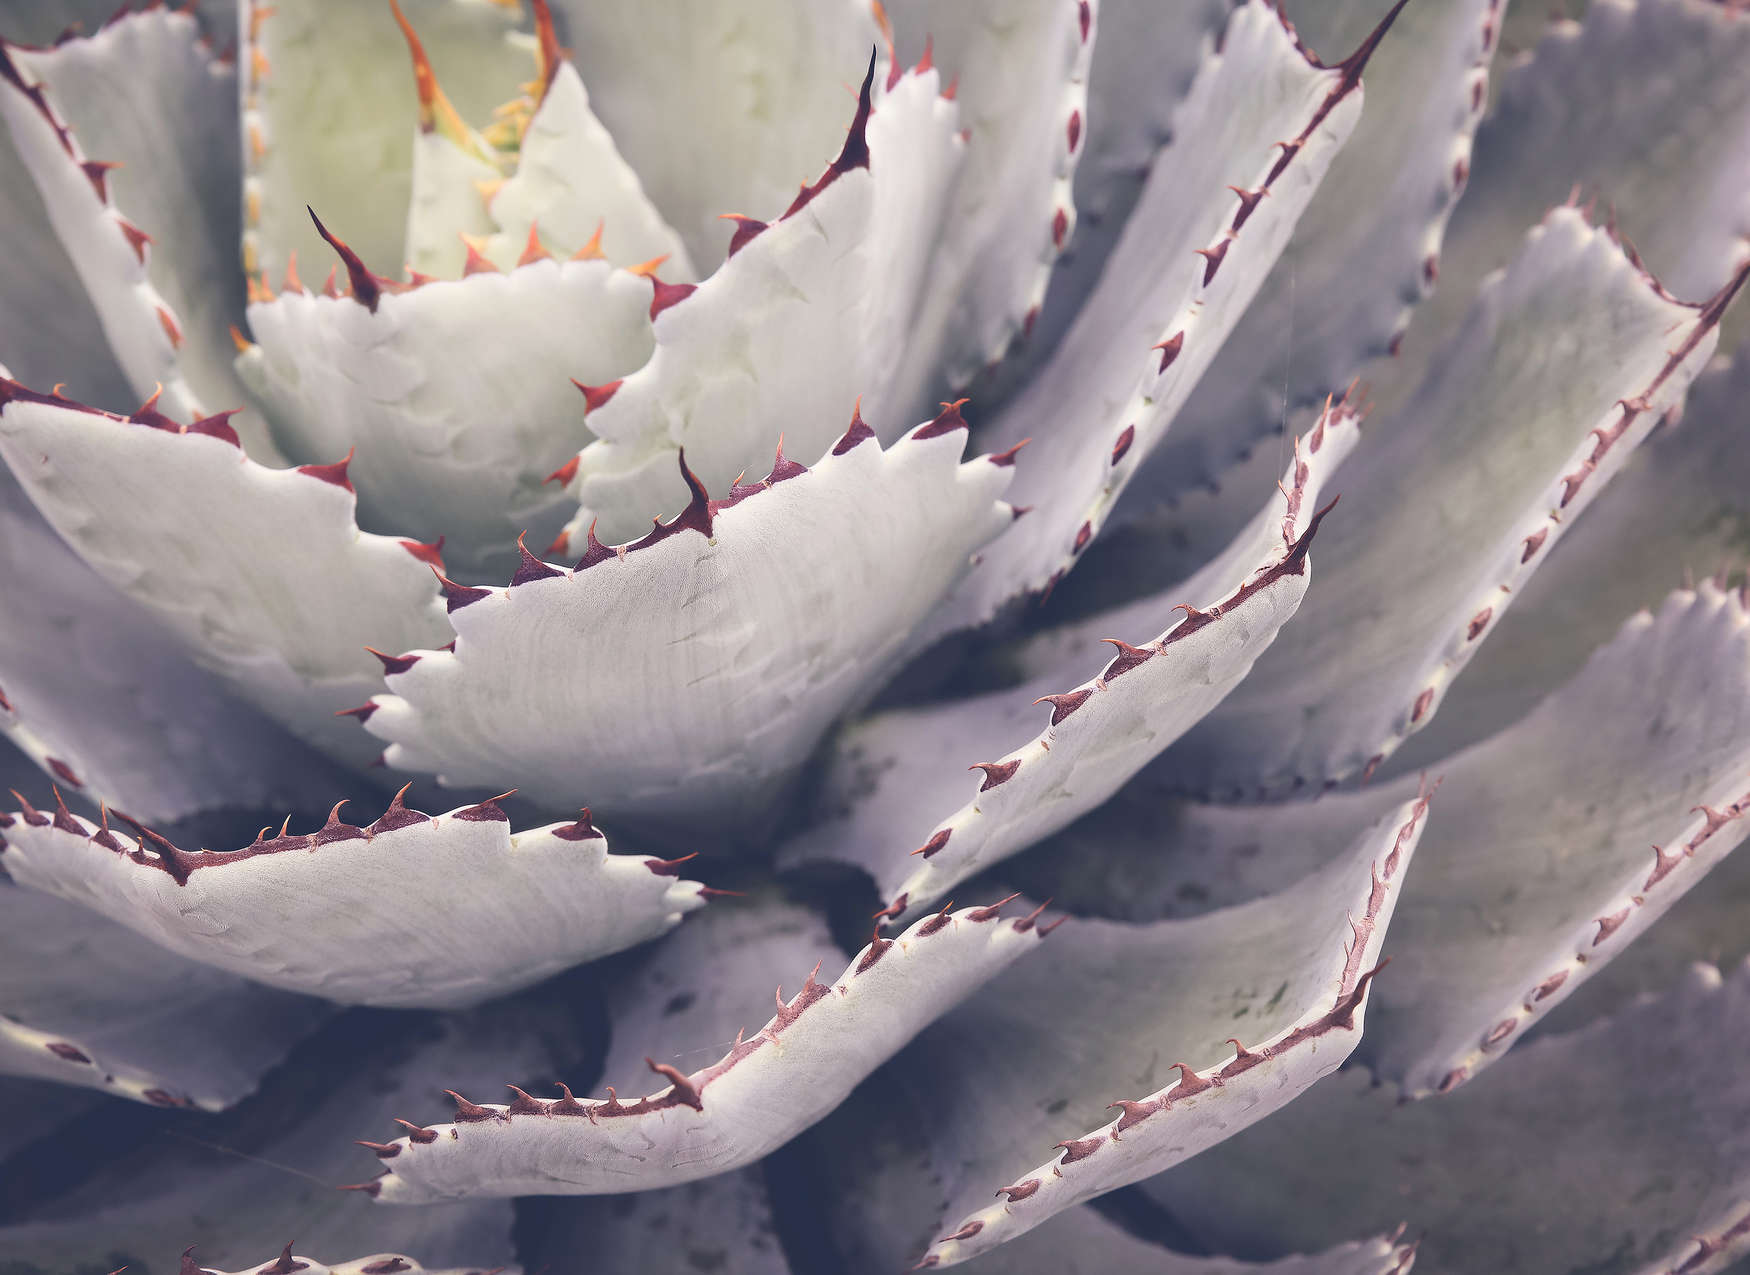             Fototapete mit Nahaufnahme von einem Kaktus – Grün
        